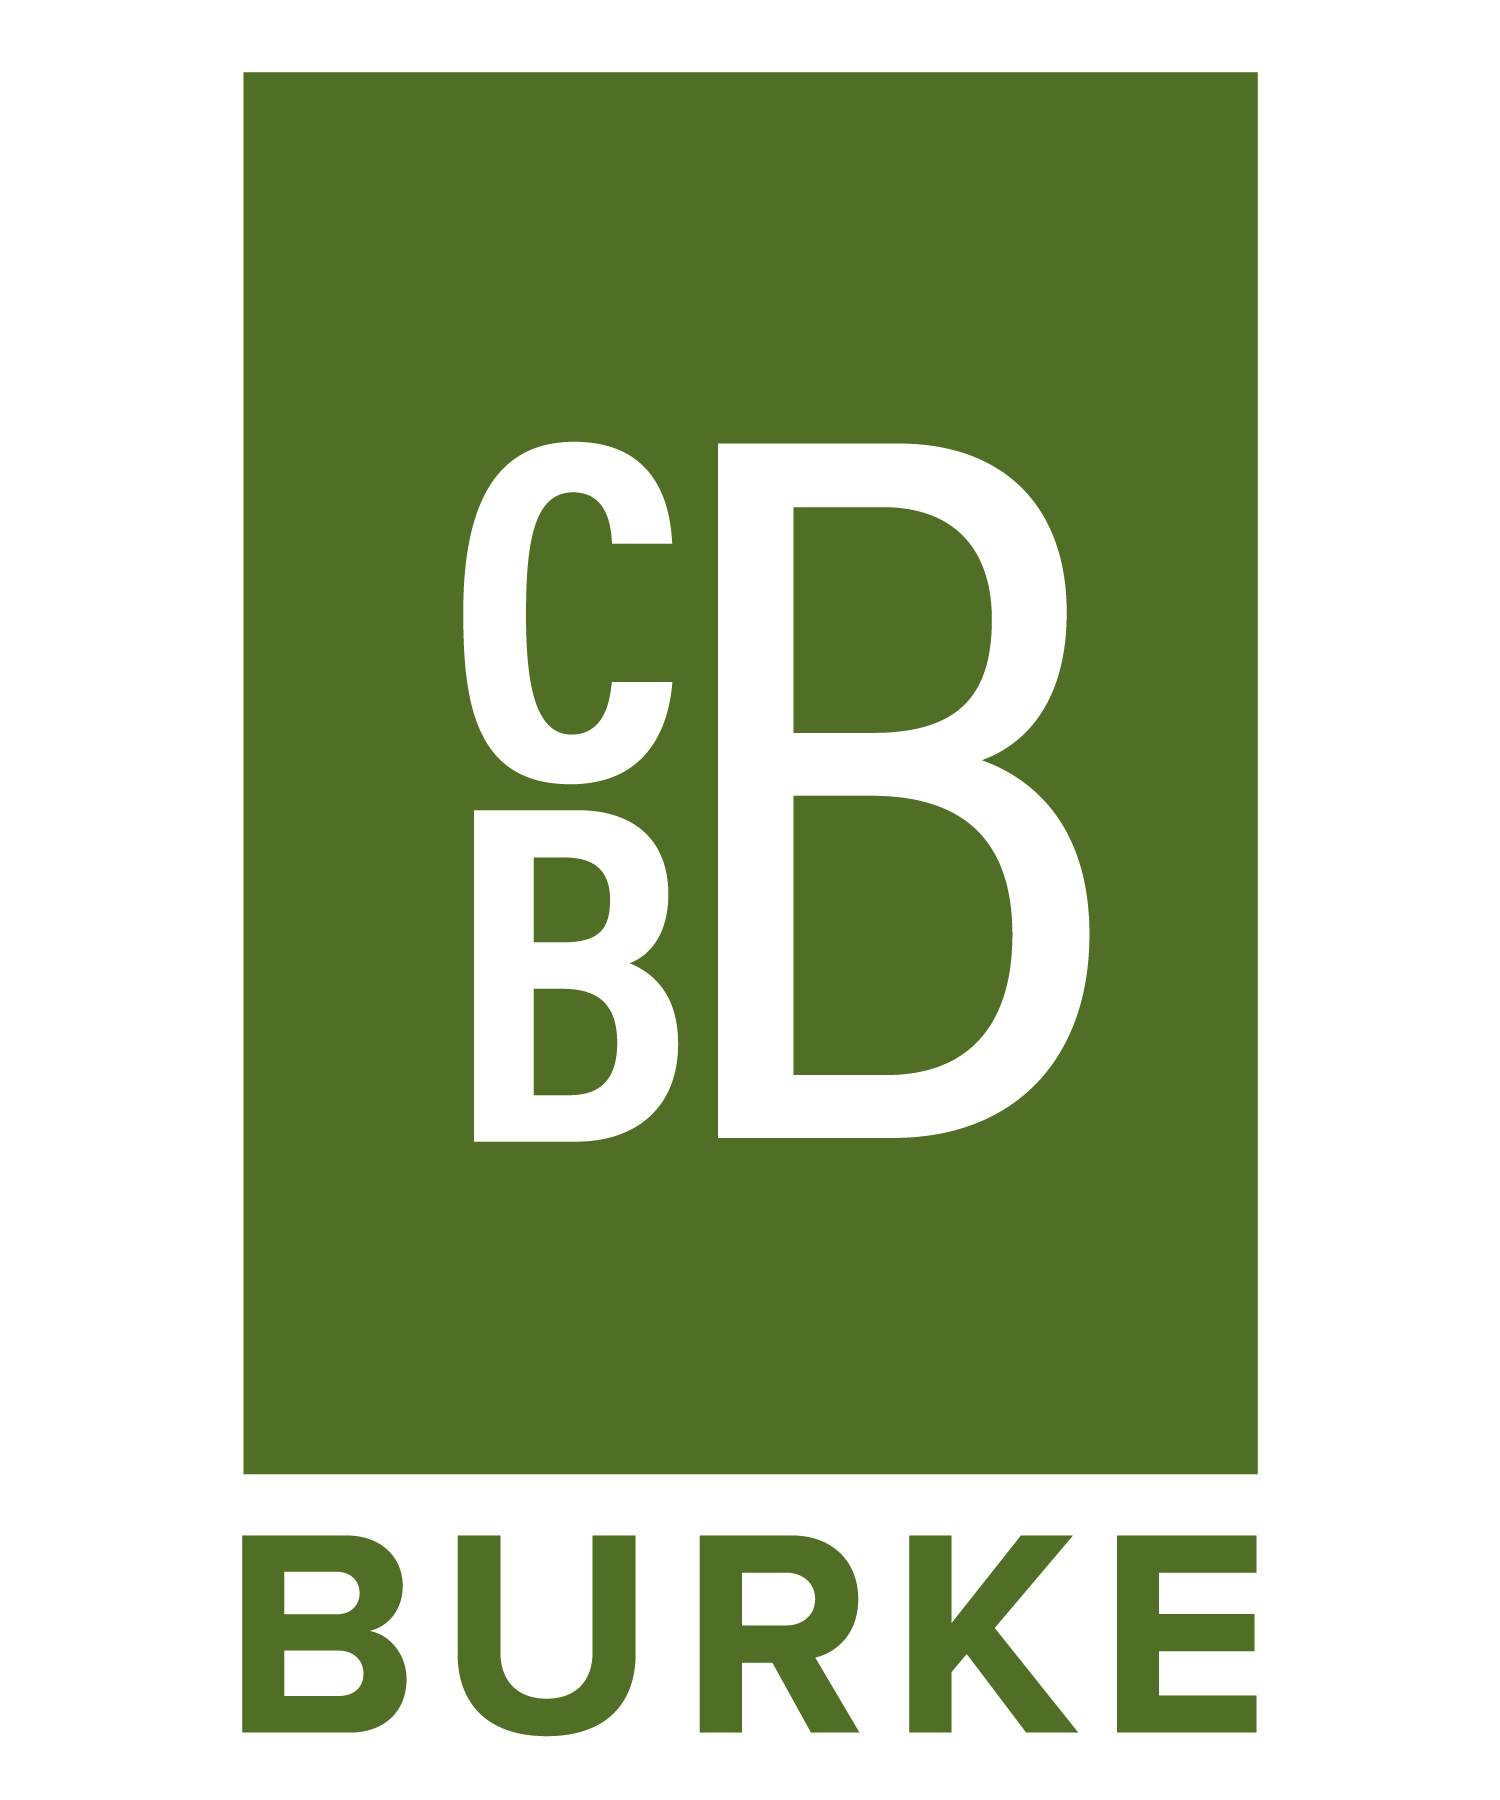 Christopher B Burke sponsor logo